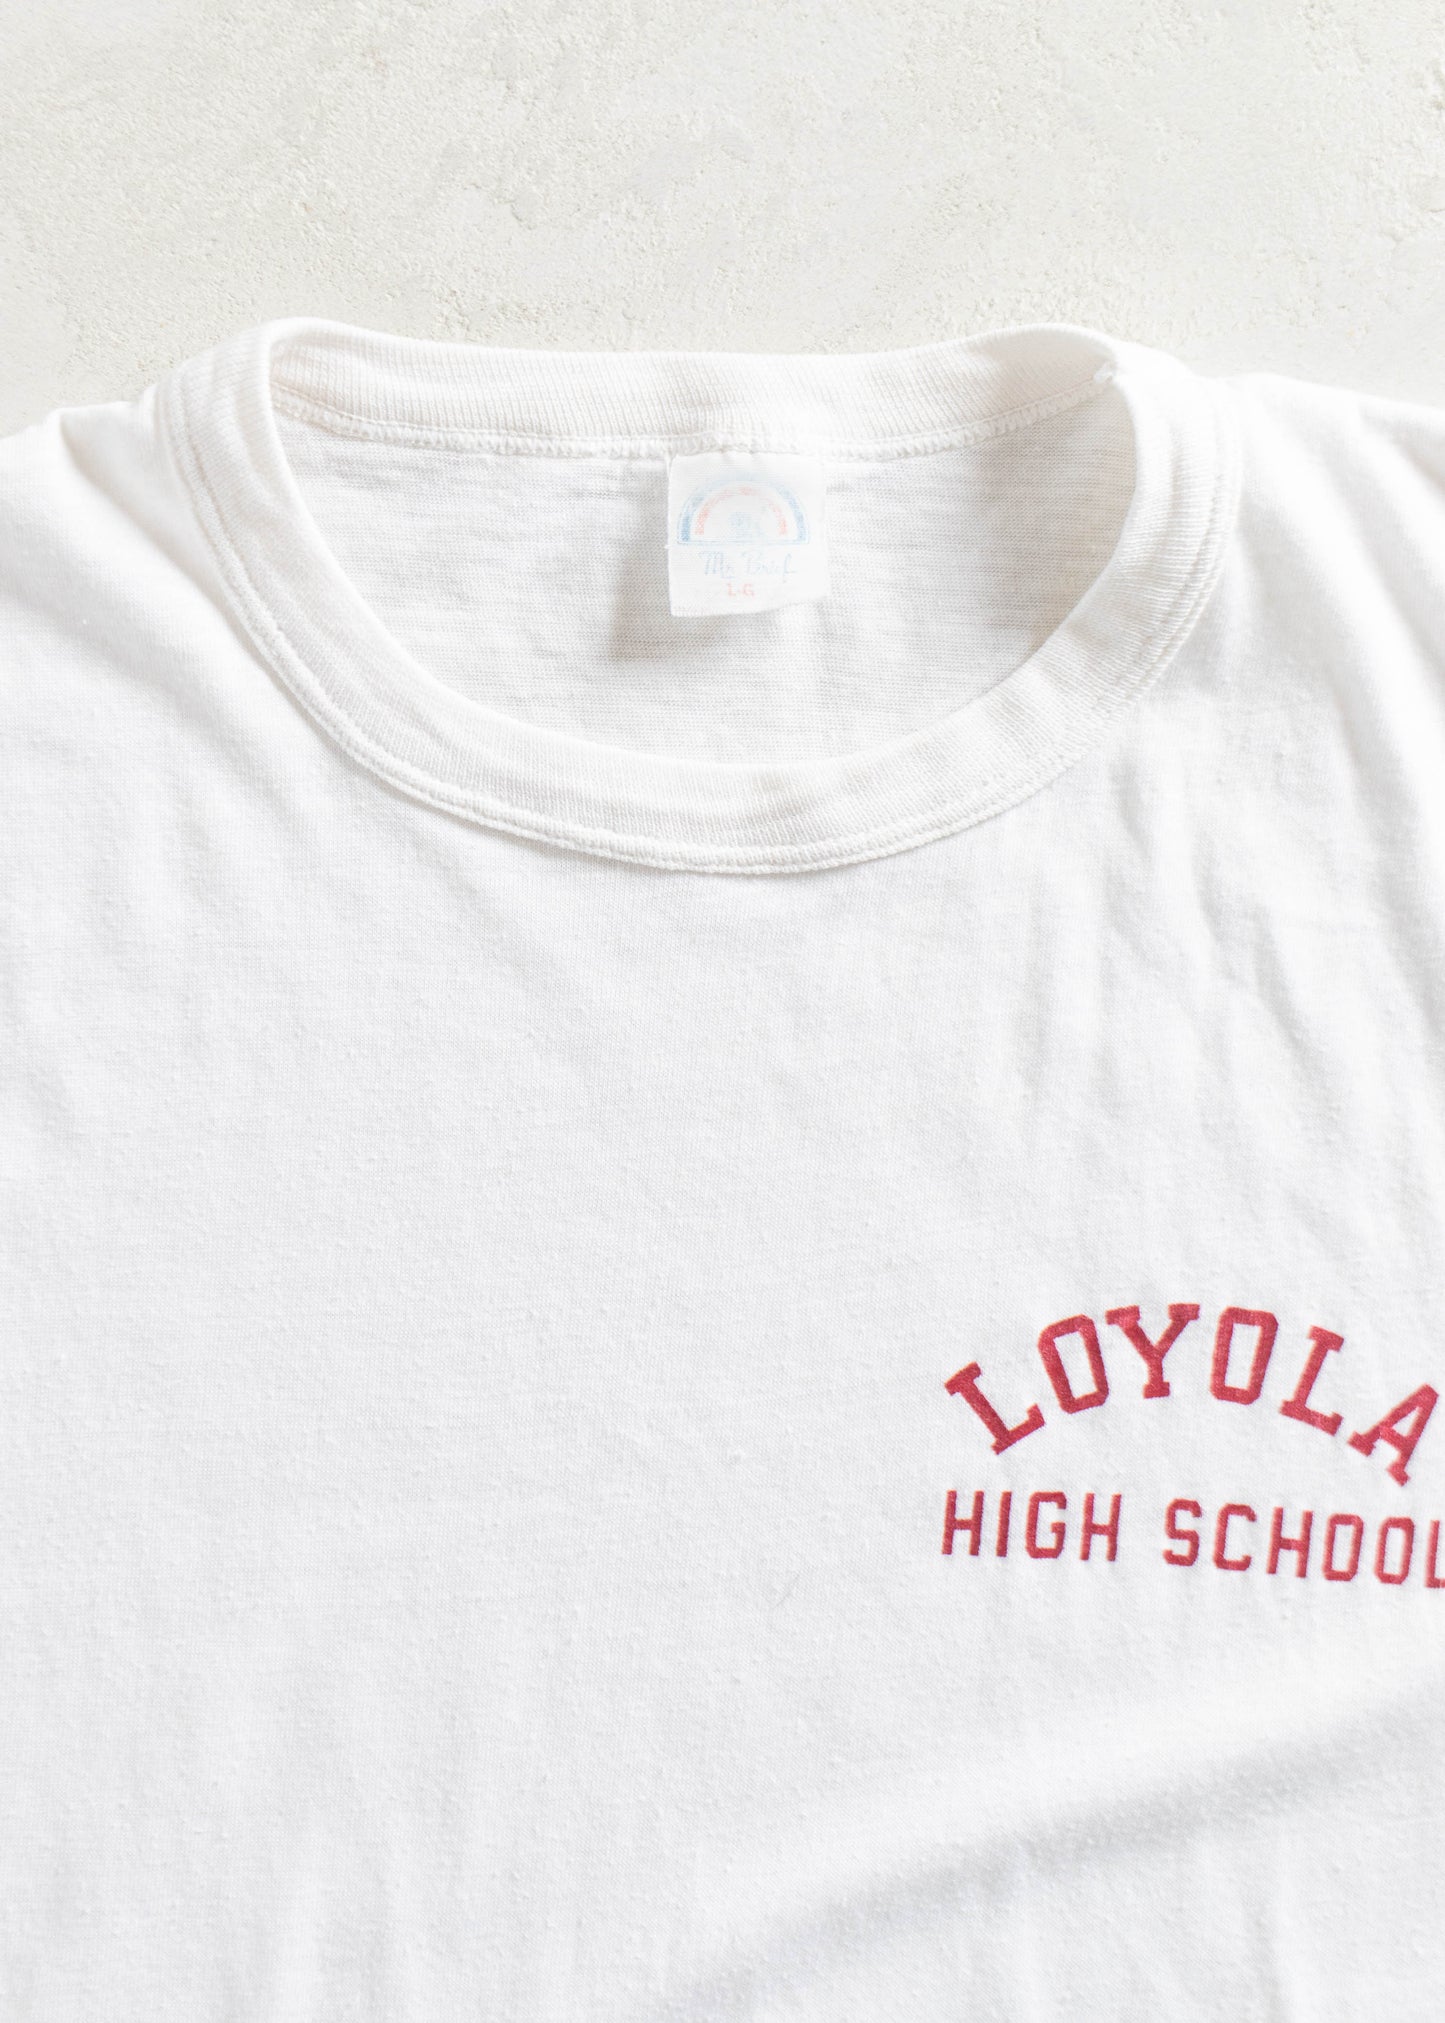 Vintage 1980s Mr. Brief Loyola High School T-Shirt Size S/M